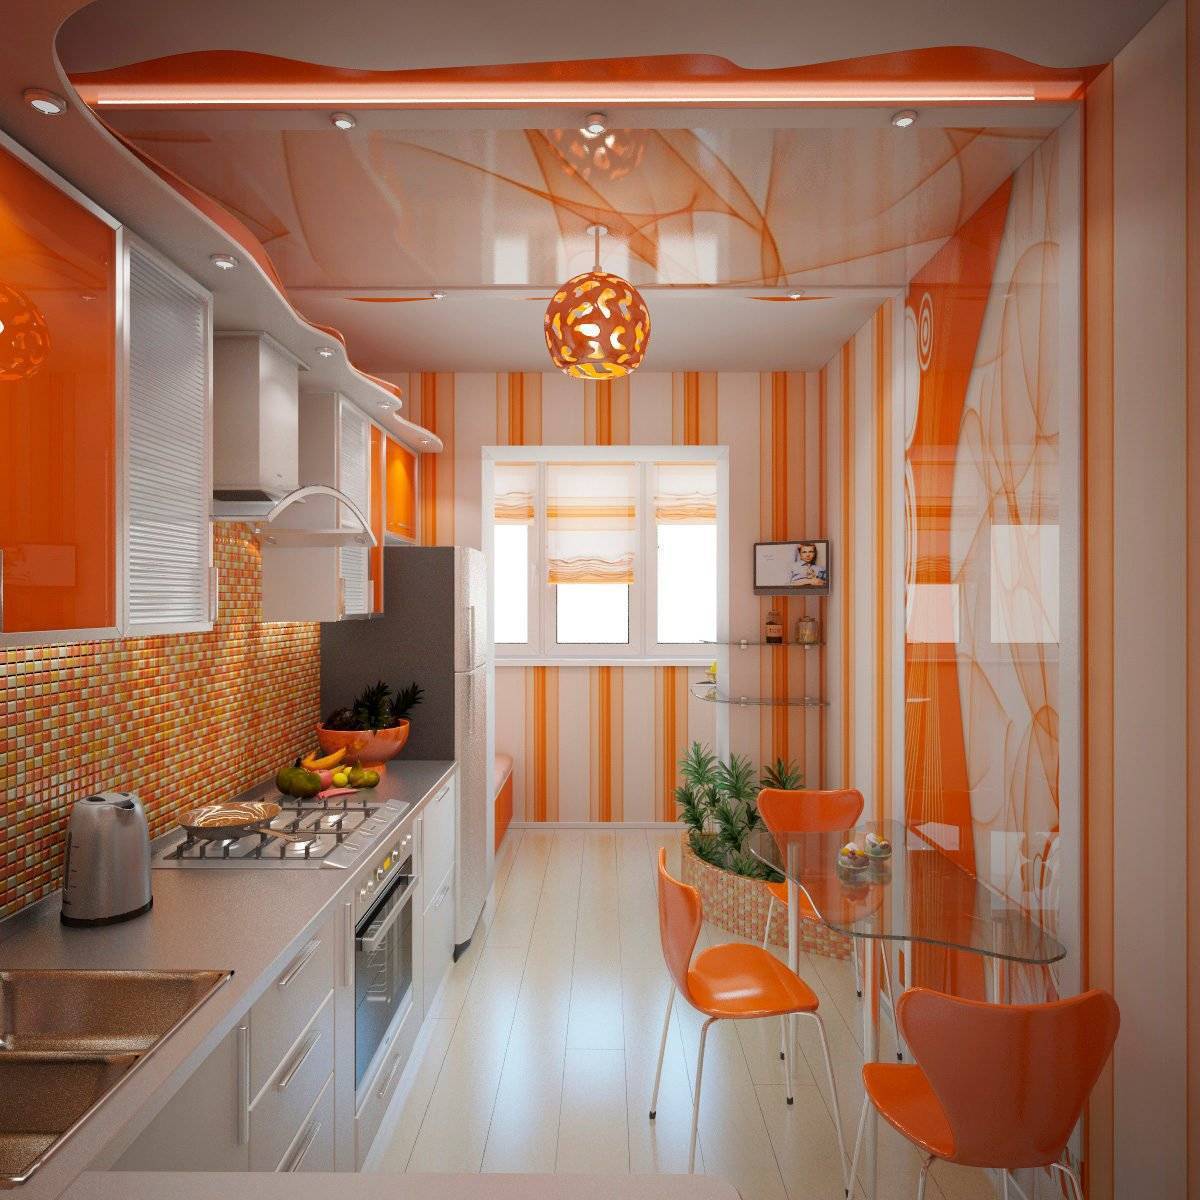 Кухня в оранжевом цвете - 75 фото идей в интерьере кухни